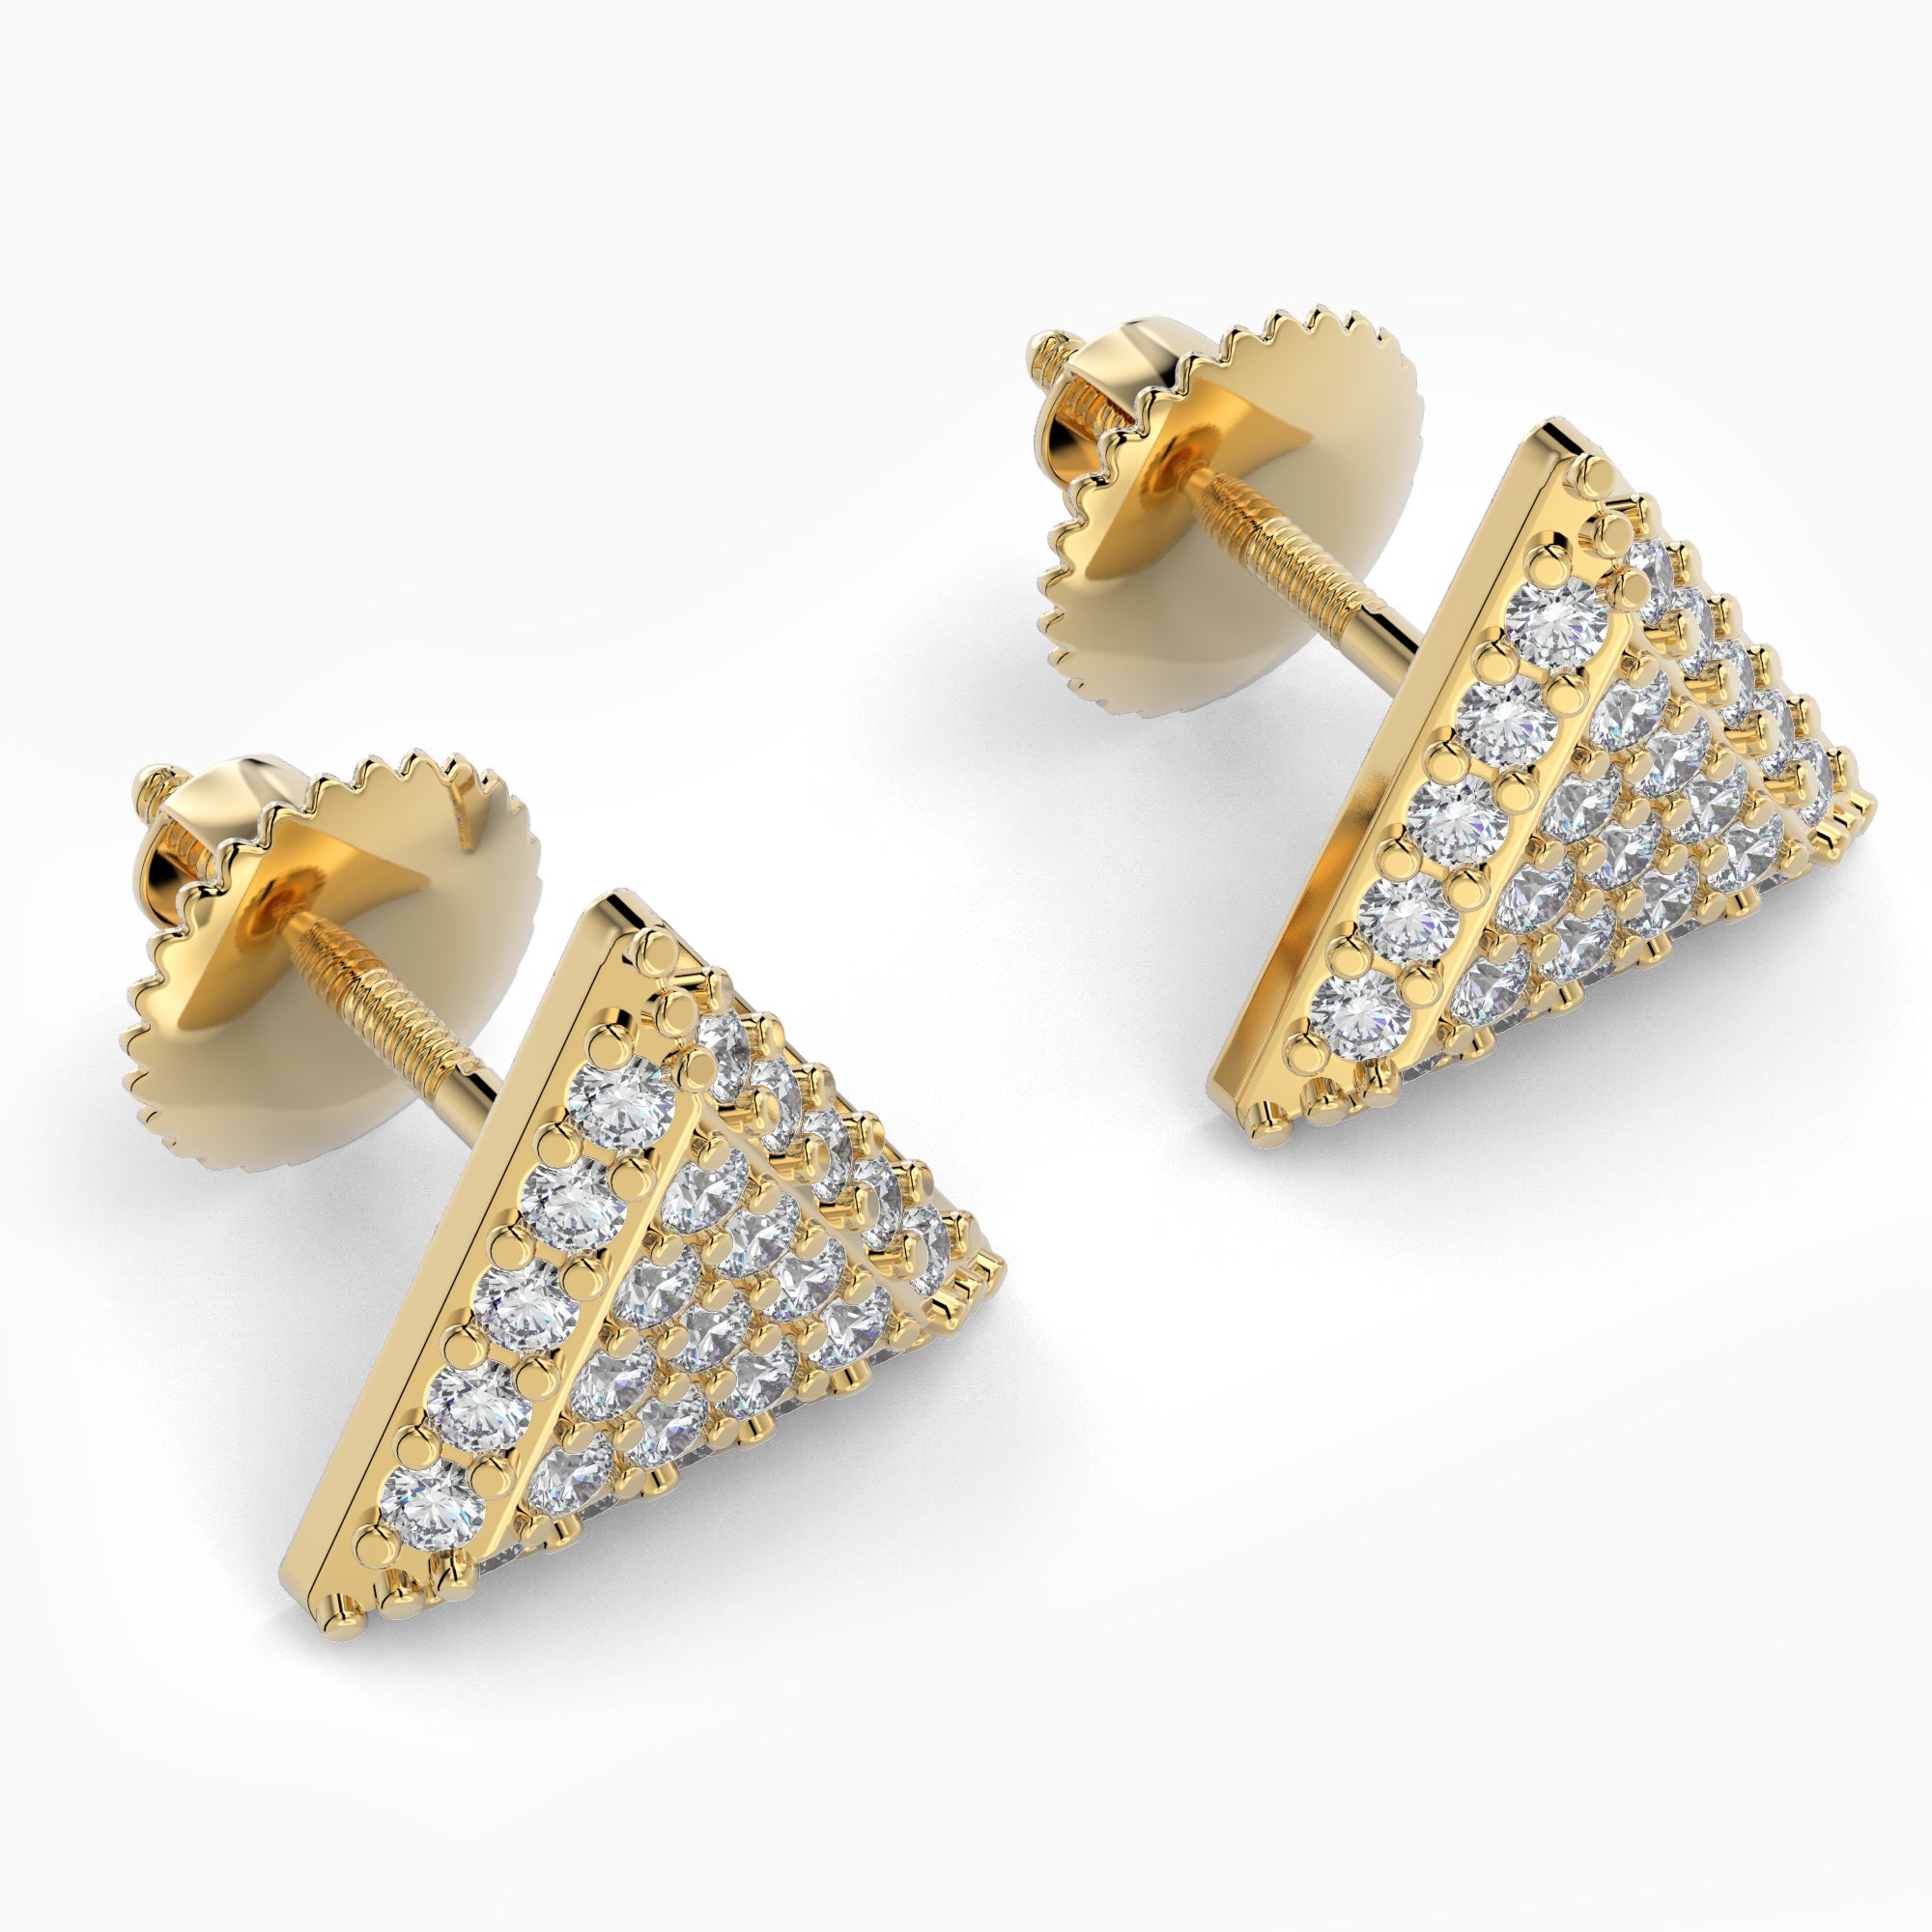 Triangle Shaped AMoré Pavé Earrings With 0.40 ct. Diamonds